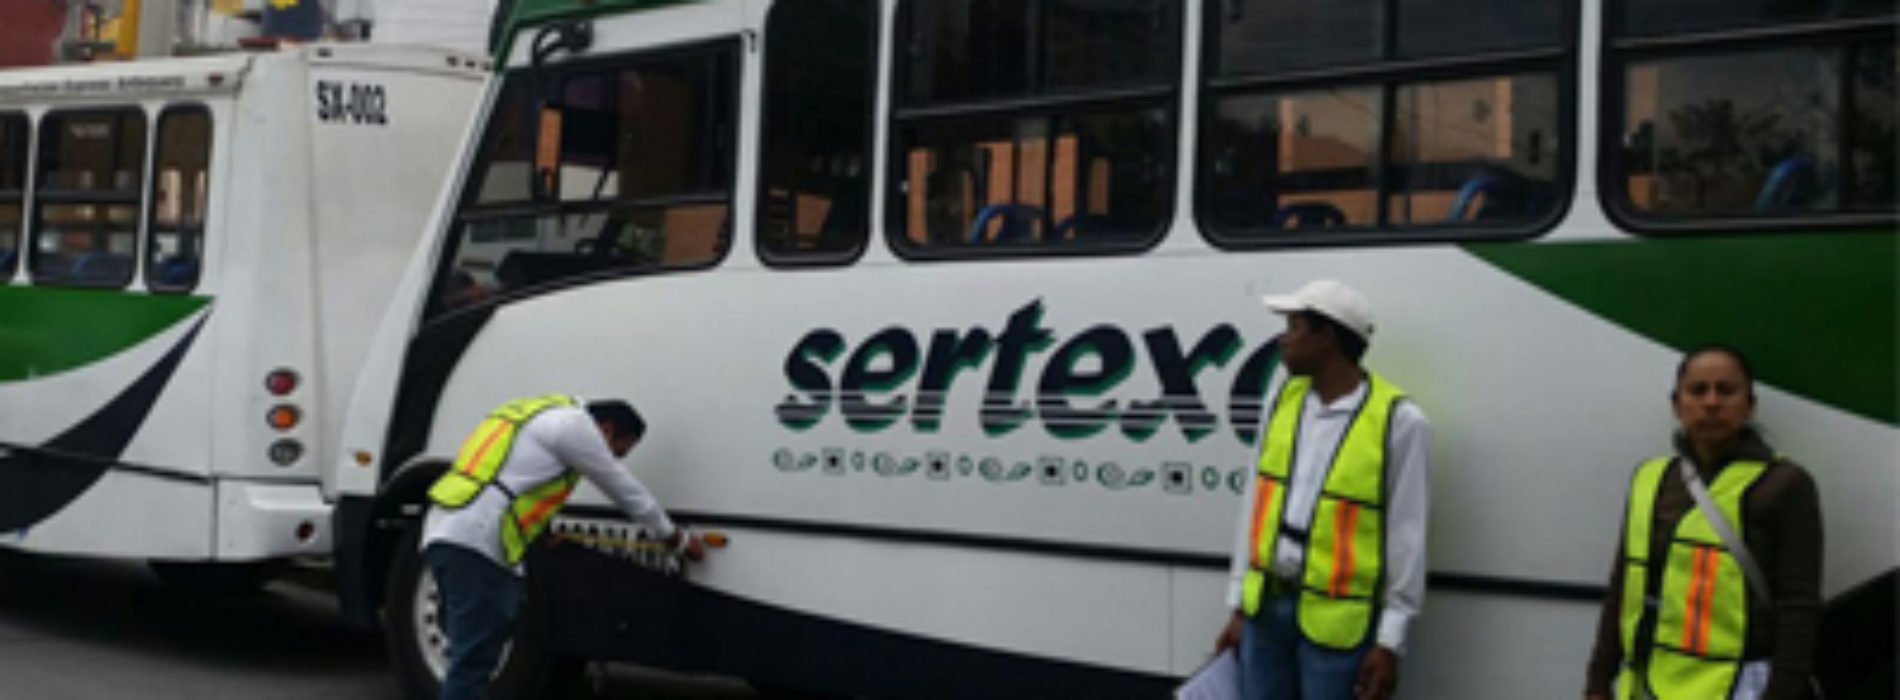 Supervisa SEVITRA cromática y elementos de seguridad en autobuses urbanos de la Ciudad de Oaxaca